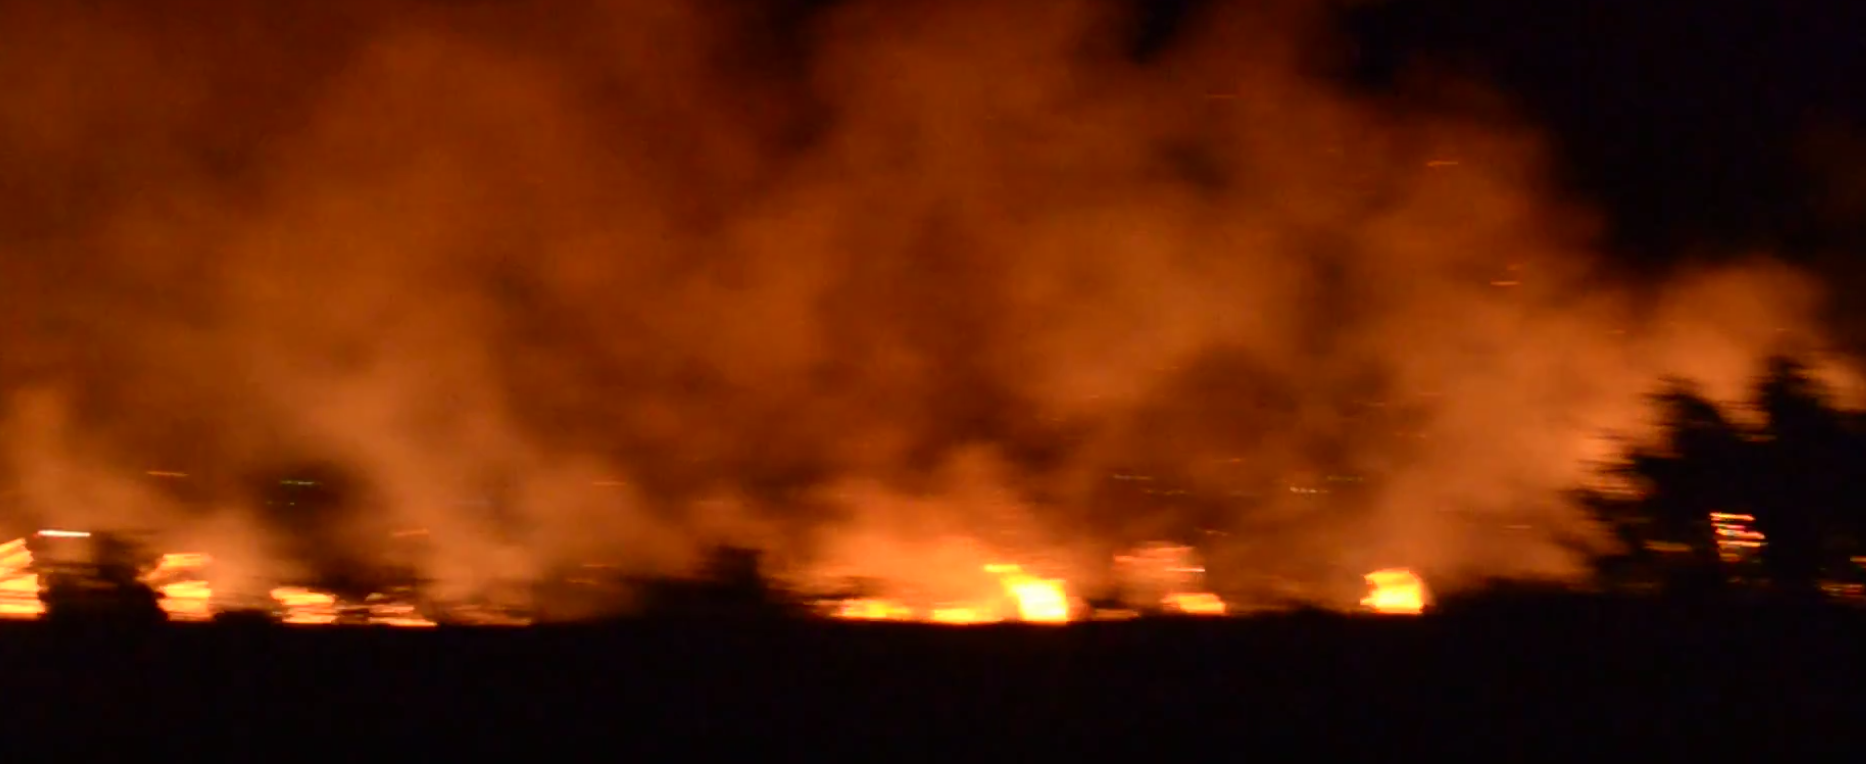 Δραματικό βράδυ στην Ηλεία από την πύρινη λαίλαπα που έκαψε σπίτια – Εκκενώθηκε η Σκιλλουντία (βίντεο)